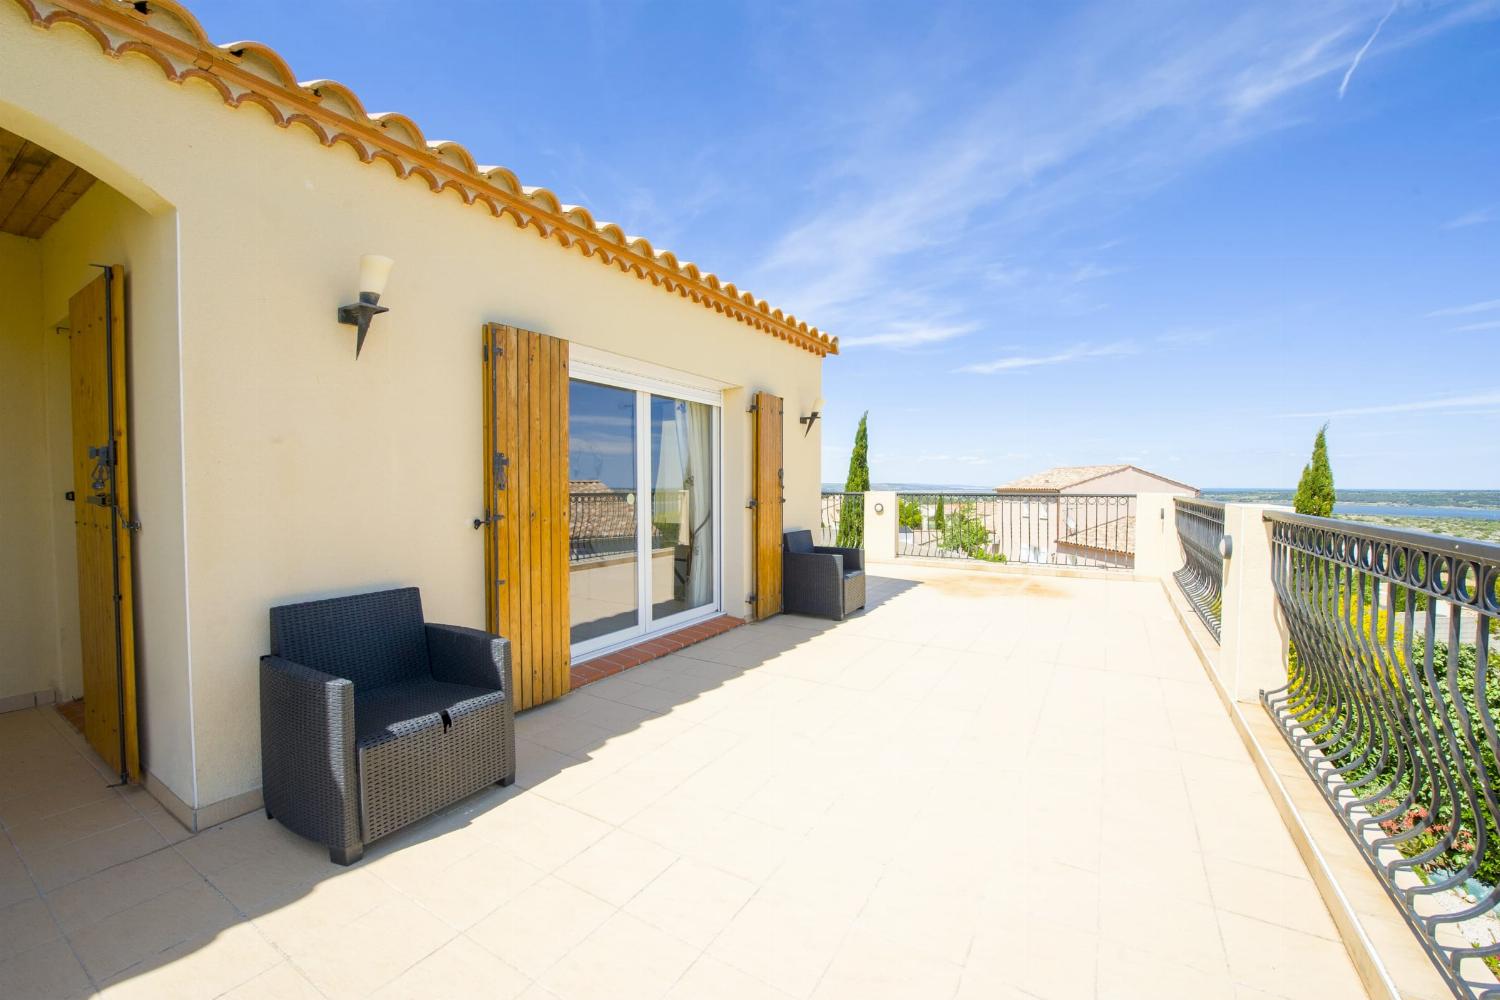 Terrasse du 1er étage | Villa de vacances dans le sud de la France